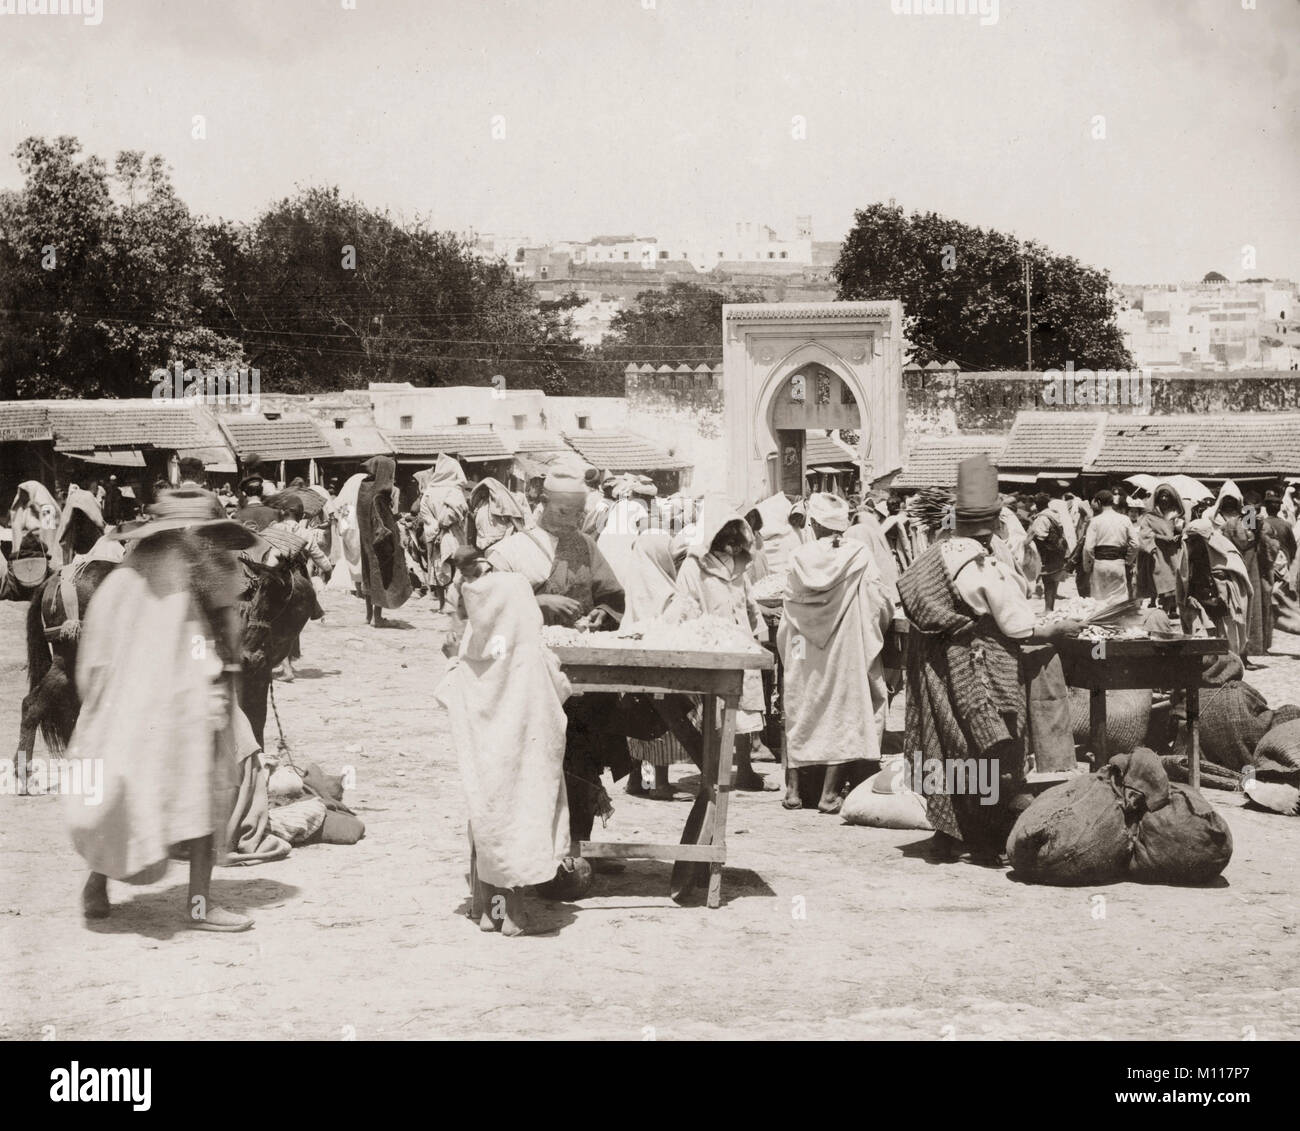 Marché, Tanger, Maroc, c.1900 Banque D'Images